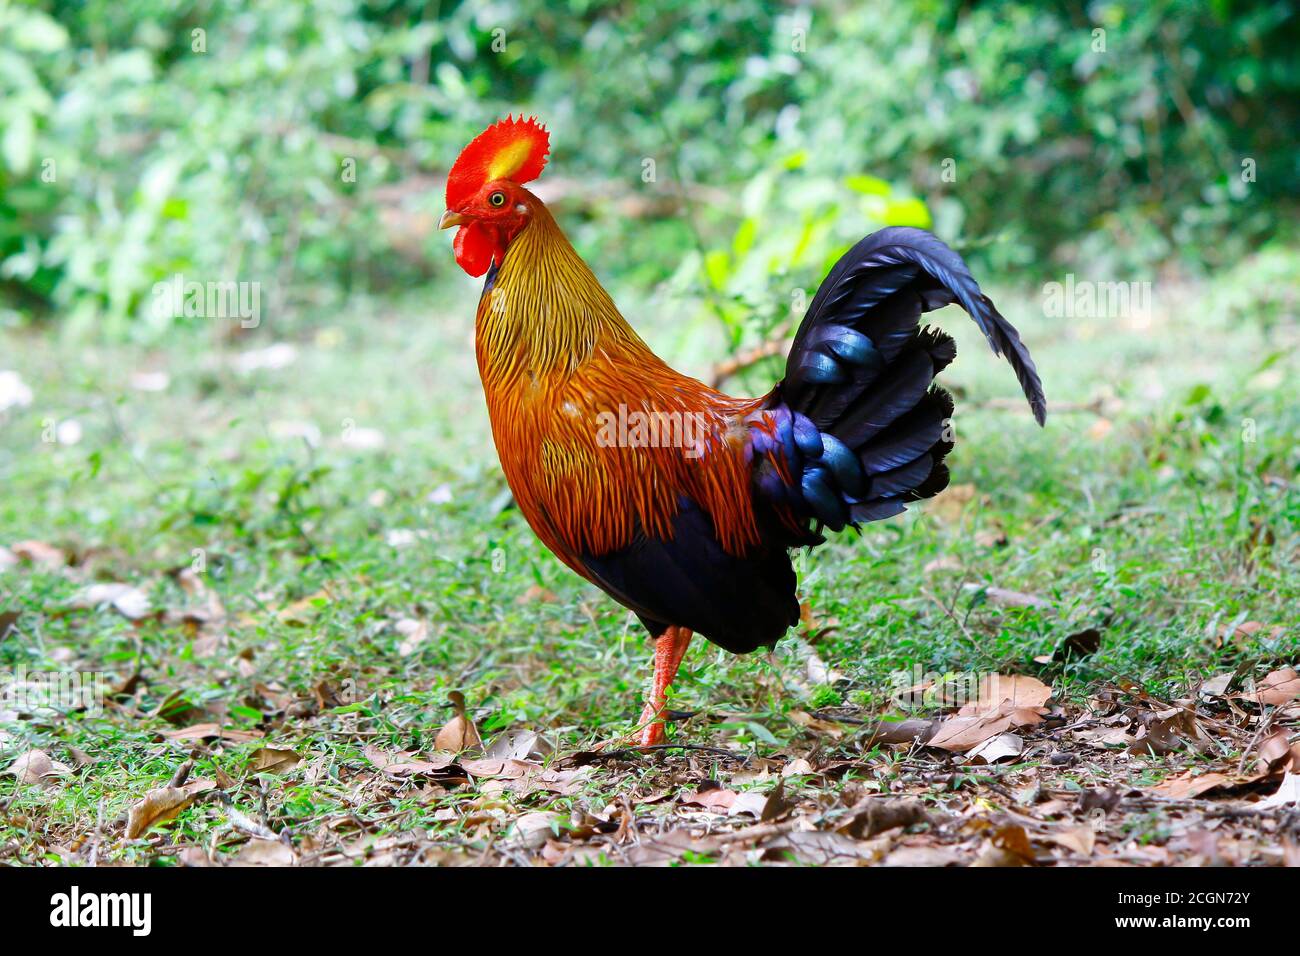 Gufo maschile della giungla dello Sri Lanka, con testa rossa e frill, collo d'oro, corpo arancione e coda indaco lucida, si trova in un'area aperta di jung parco nazionale wilpattu Foto Stock